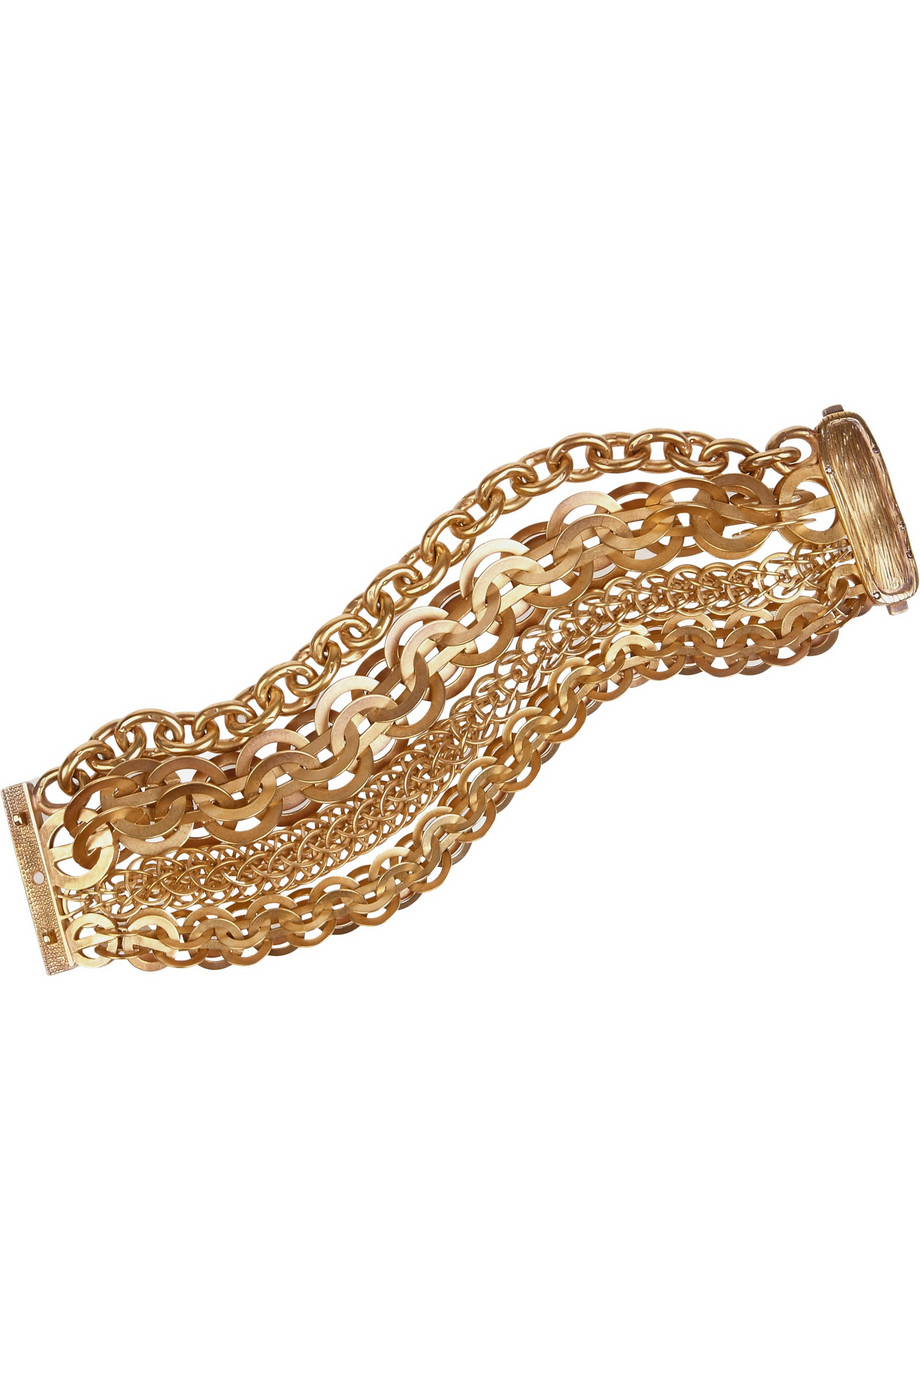 Bottega Veneta Gold-Plated Multi-Strand Chain Bracelet in Metallic - Lyst